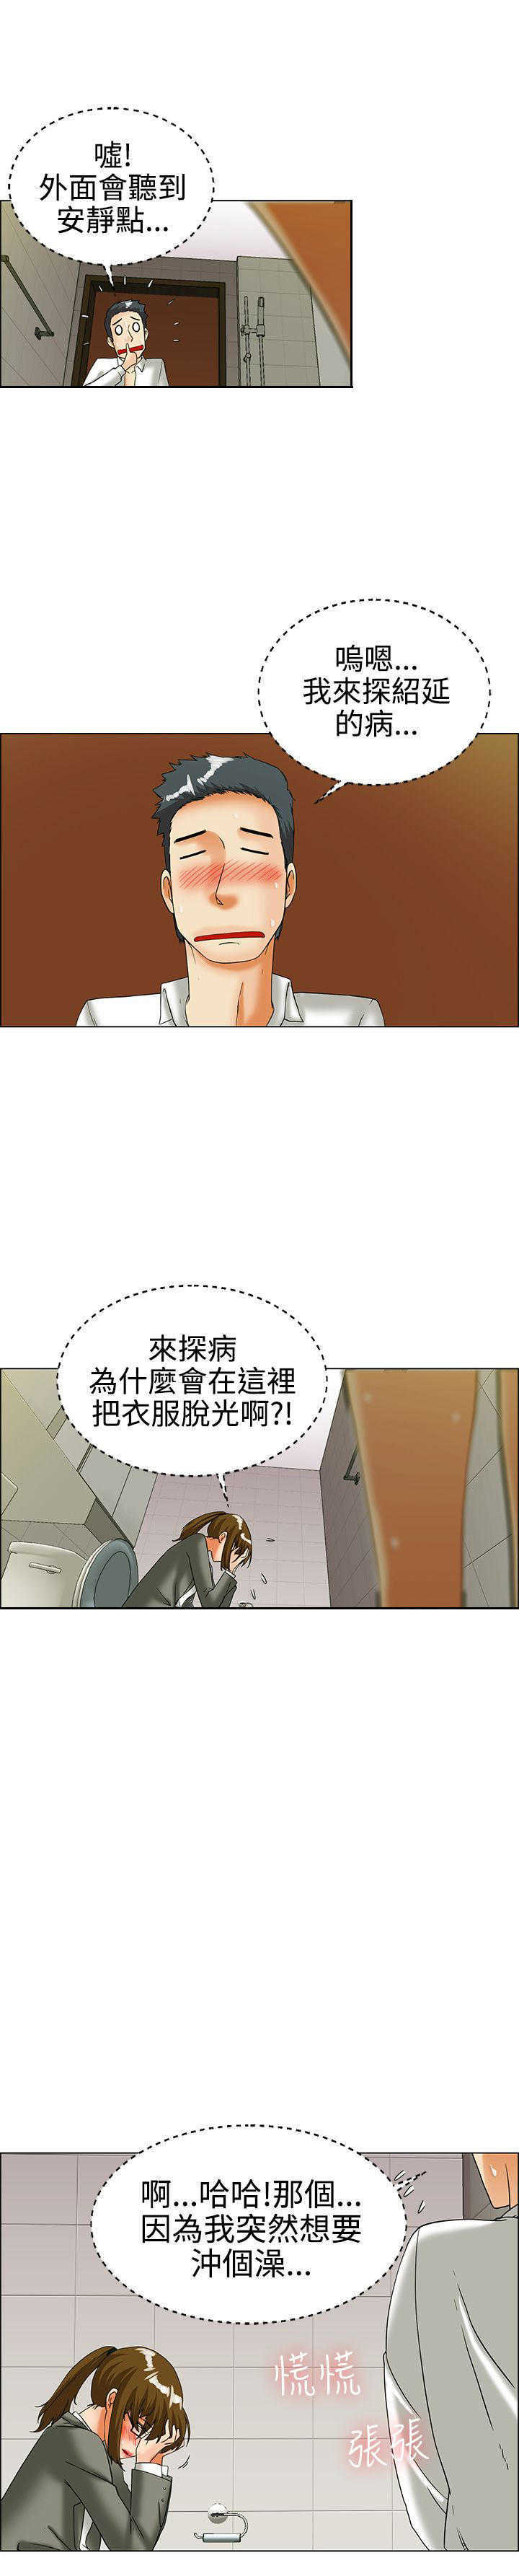 办公室恋情/隐瞒的恋情23话-精选韩国漫画_中文全集无修免费阅读